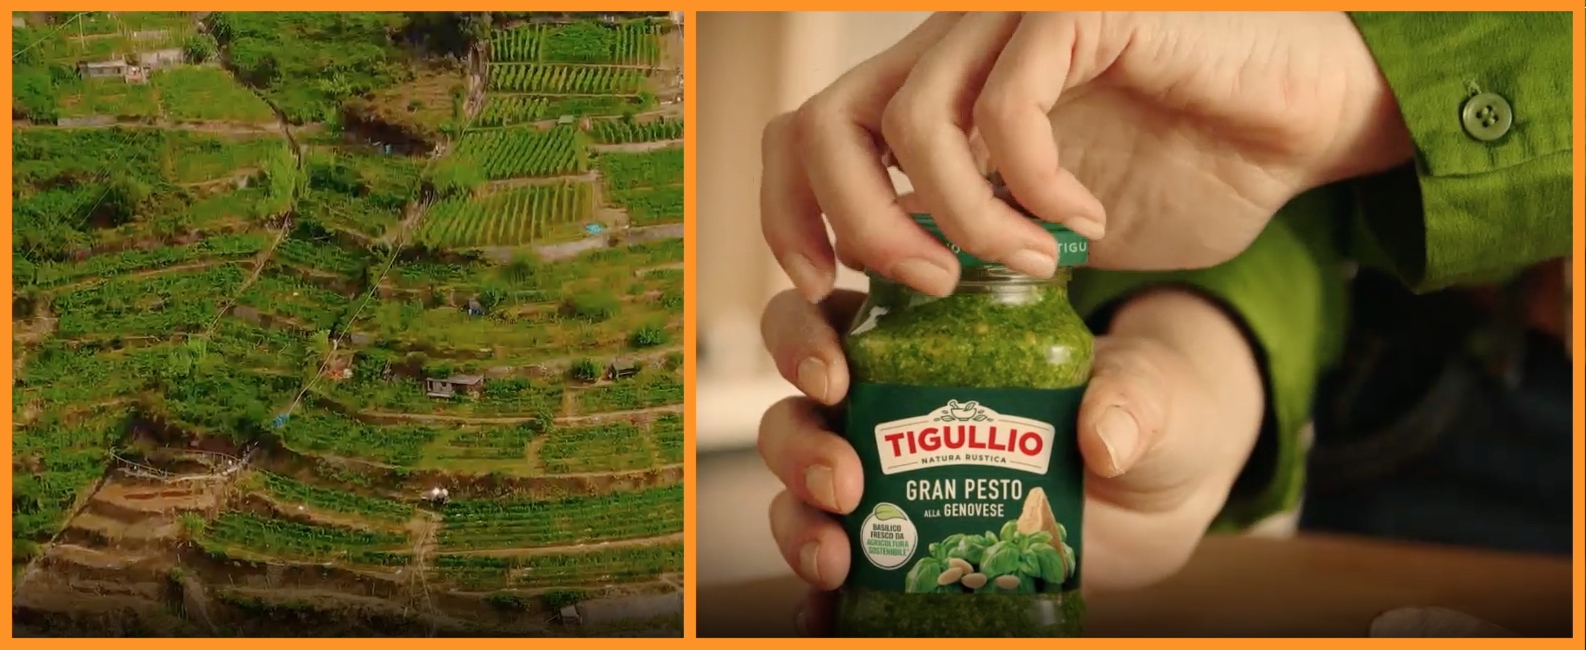 Sopra il Gran Pesto Tigullio fotografato al supermercato, sotto le immagini prese dallo spot pubblicitario